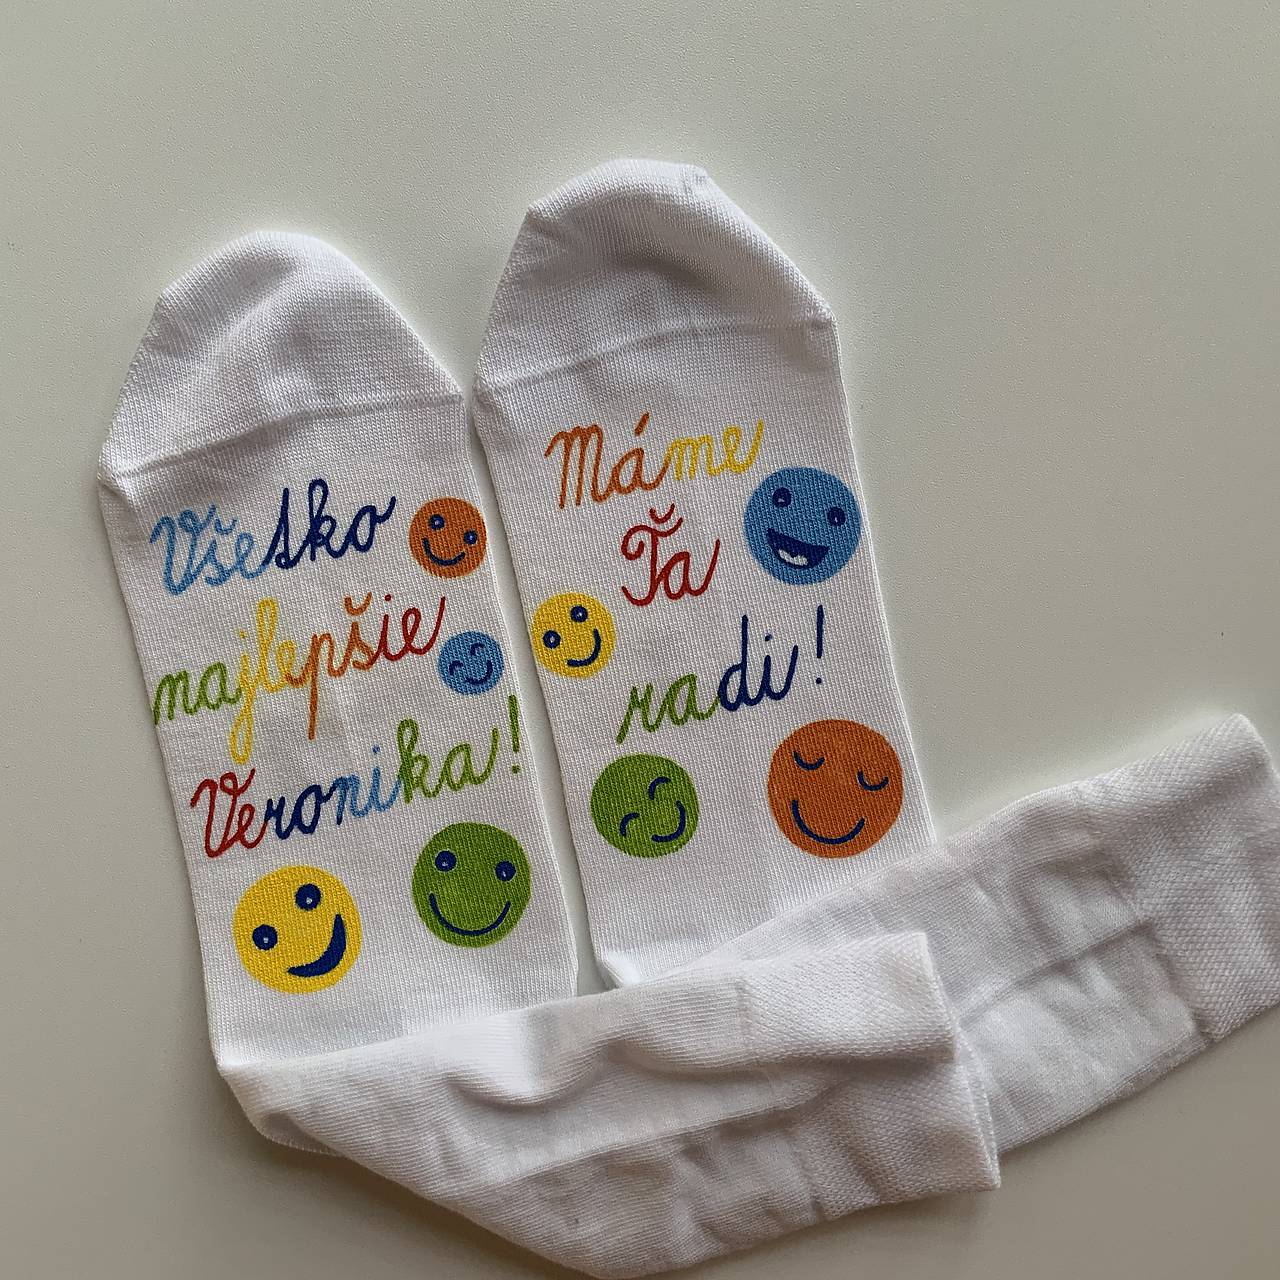 Maľované ponožky s nápisom: "Všetko najlepšie”biele s pestrofarebnými smajlíkmi